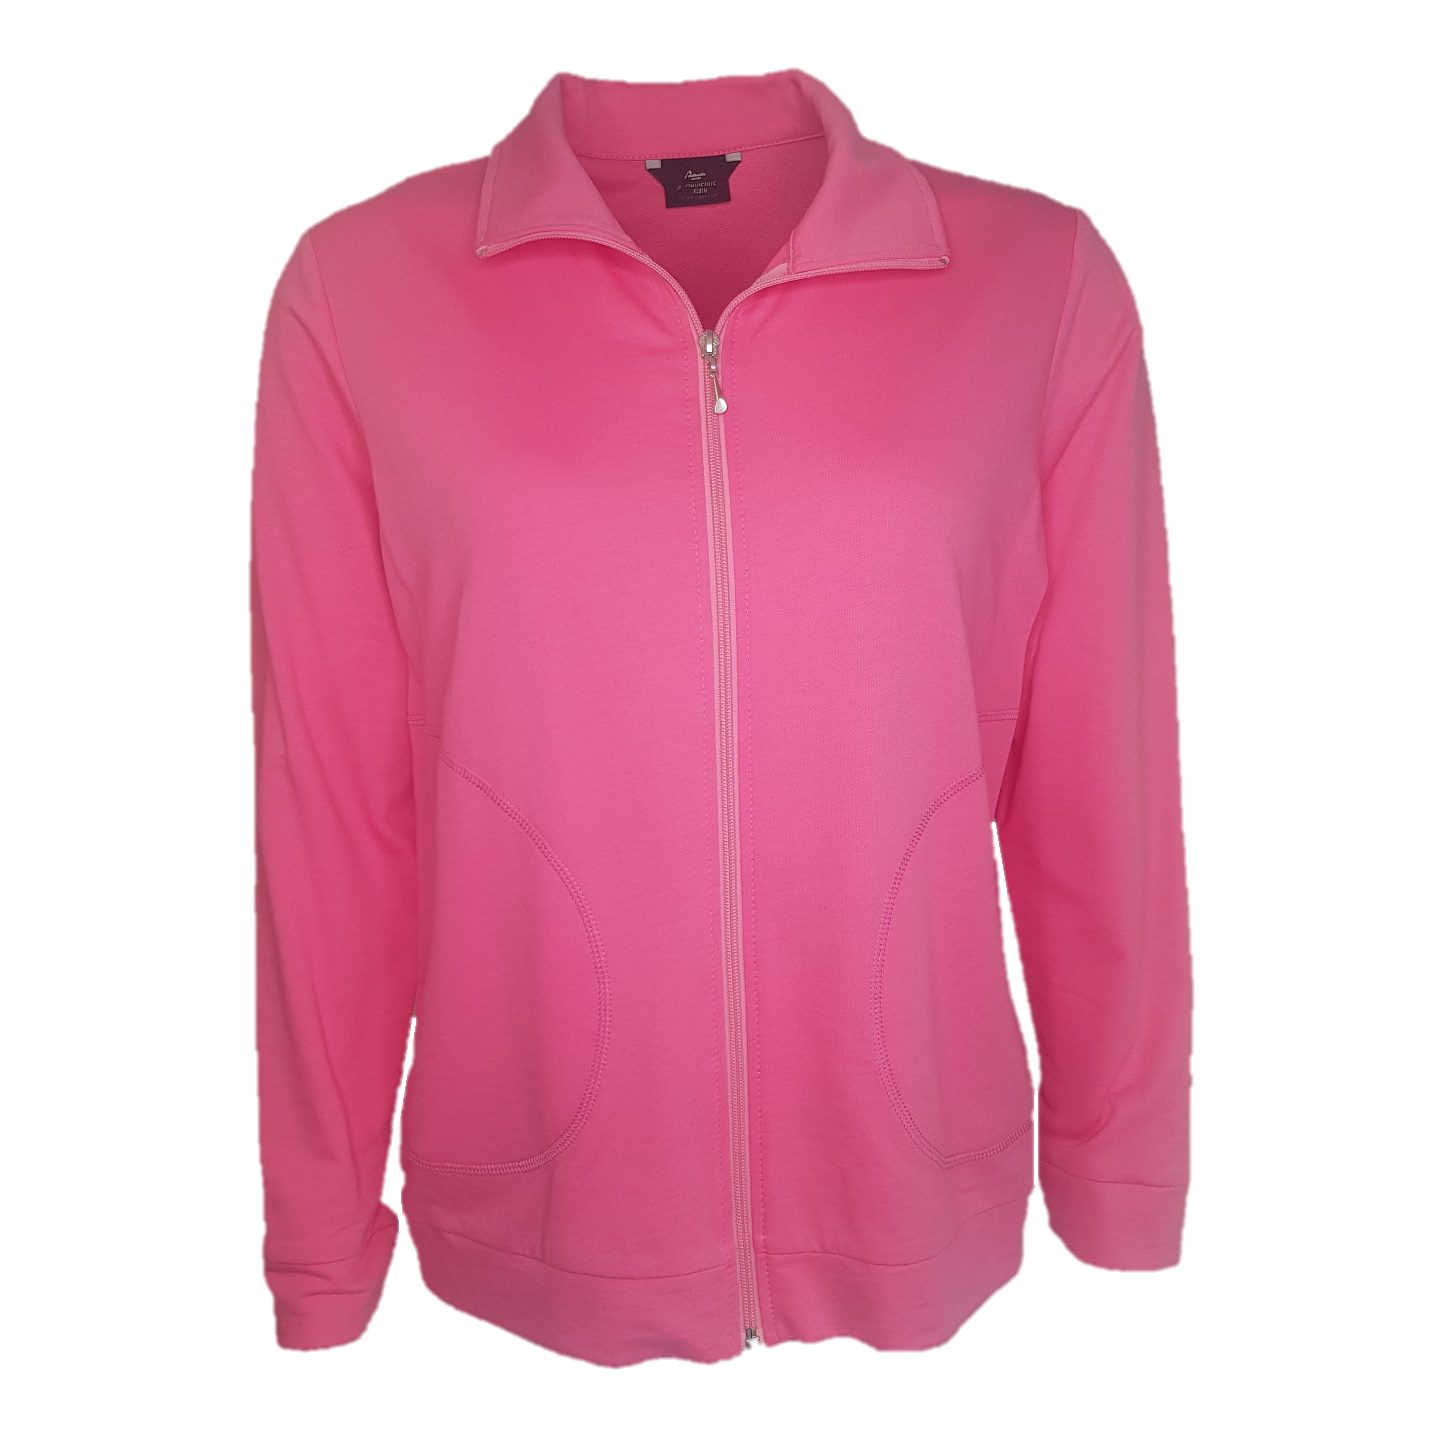 Authentic Klein Sweatjacke Damen Sport- und Freizeitjacke aus 100% Baumwolle Pink